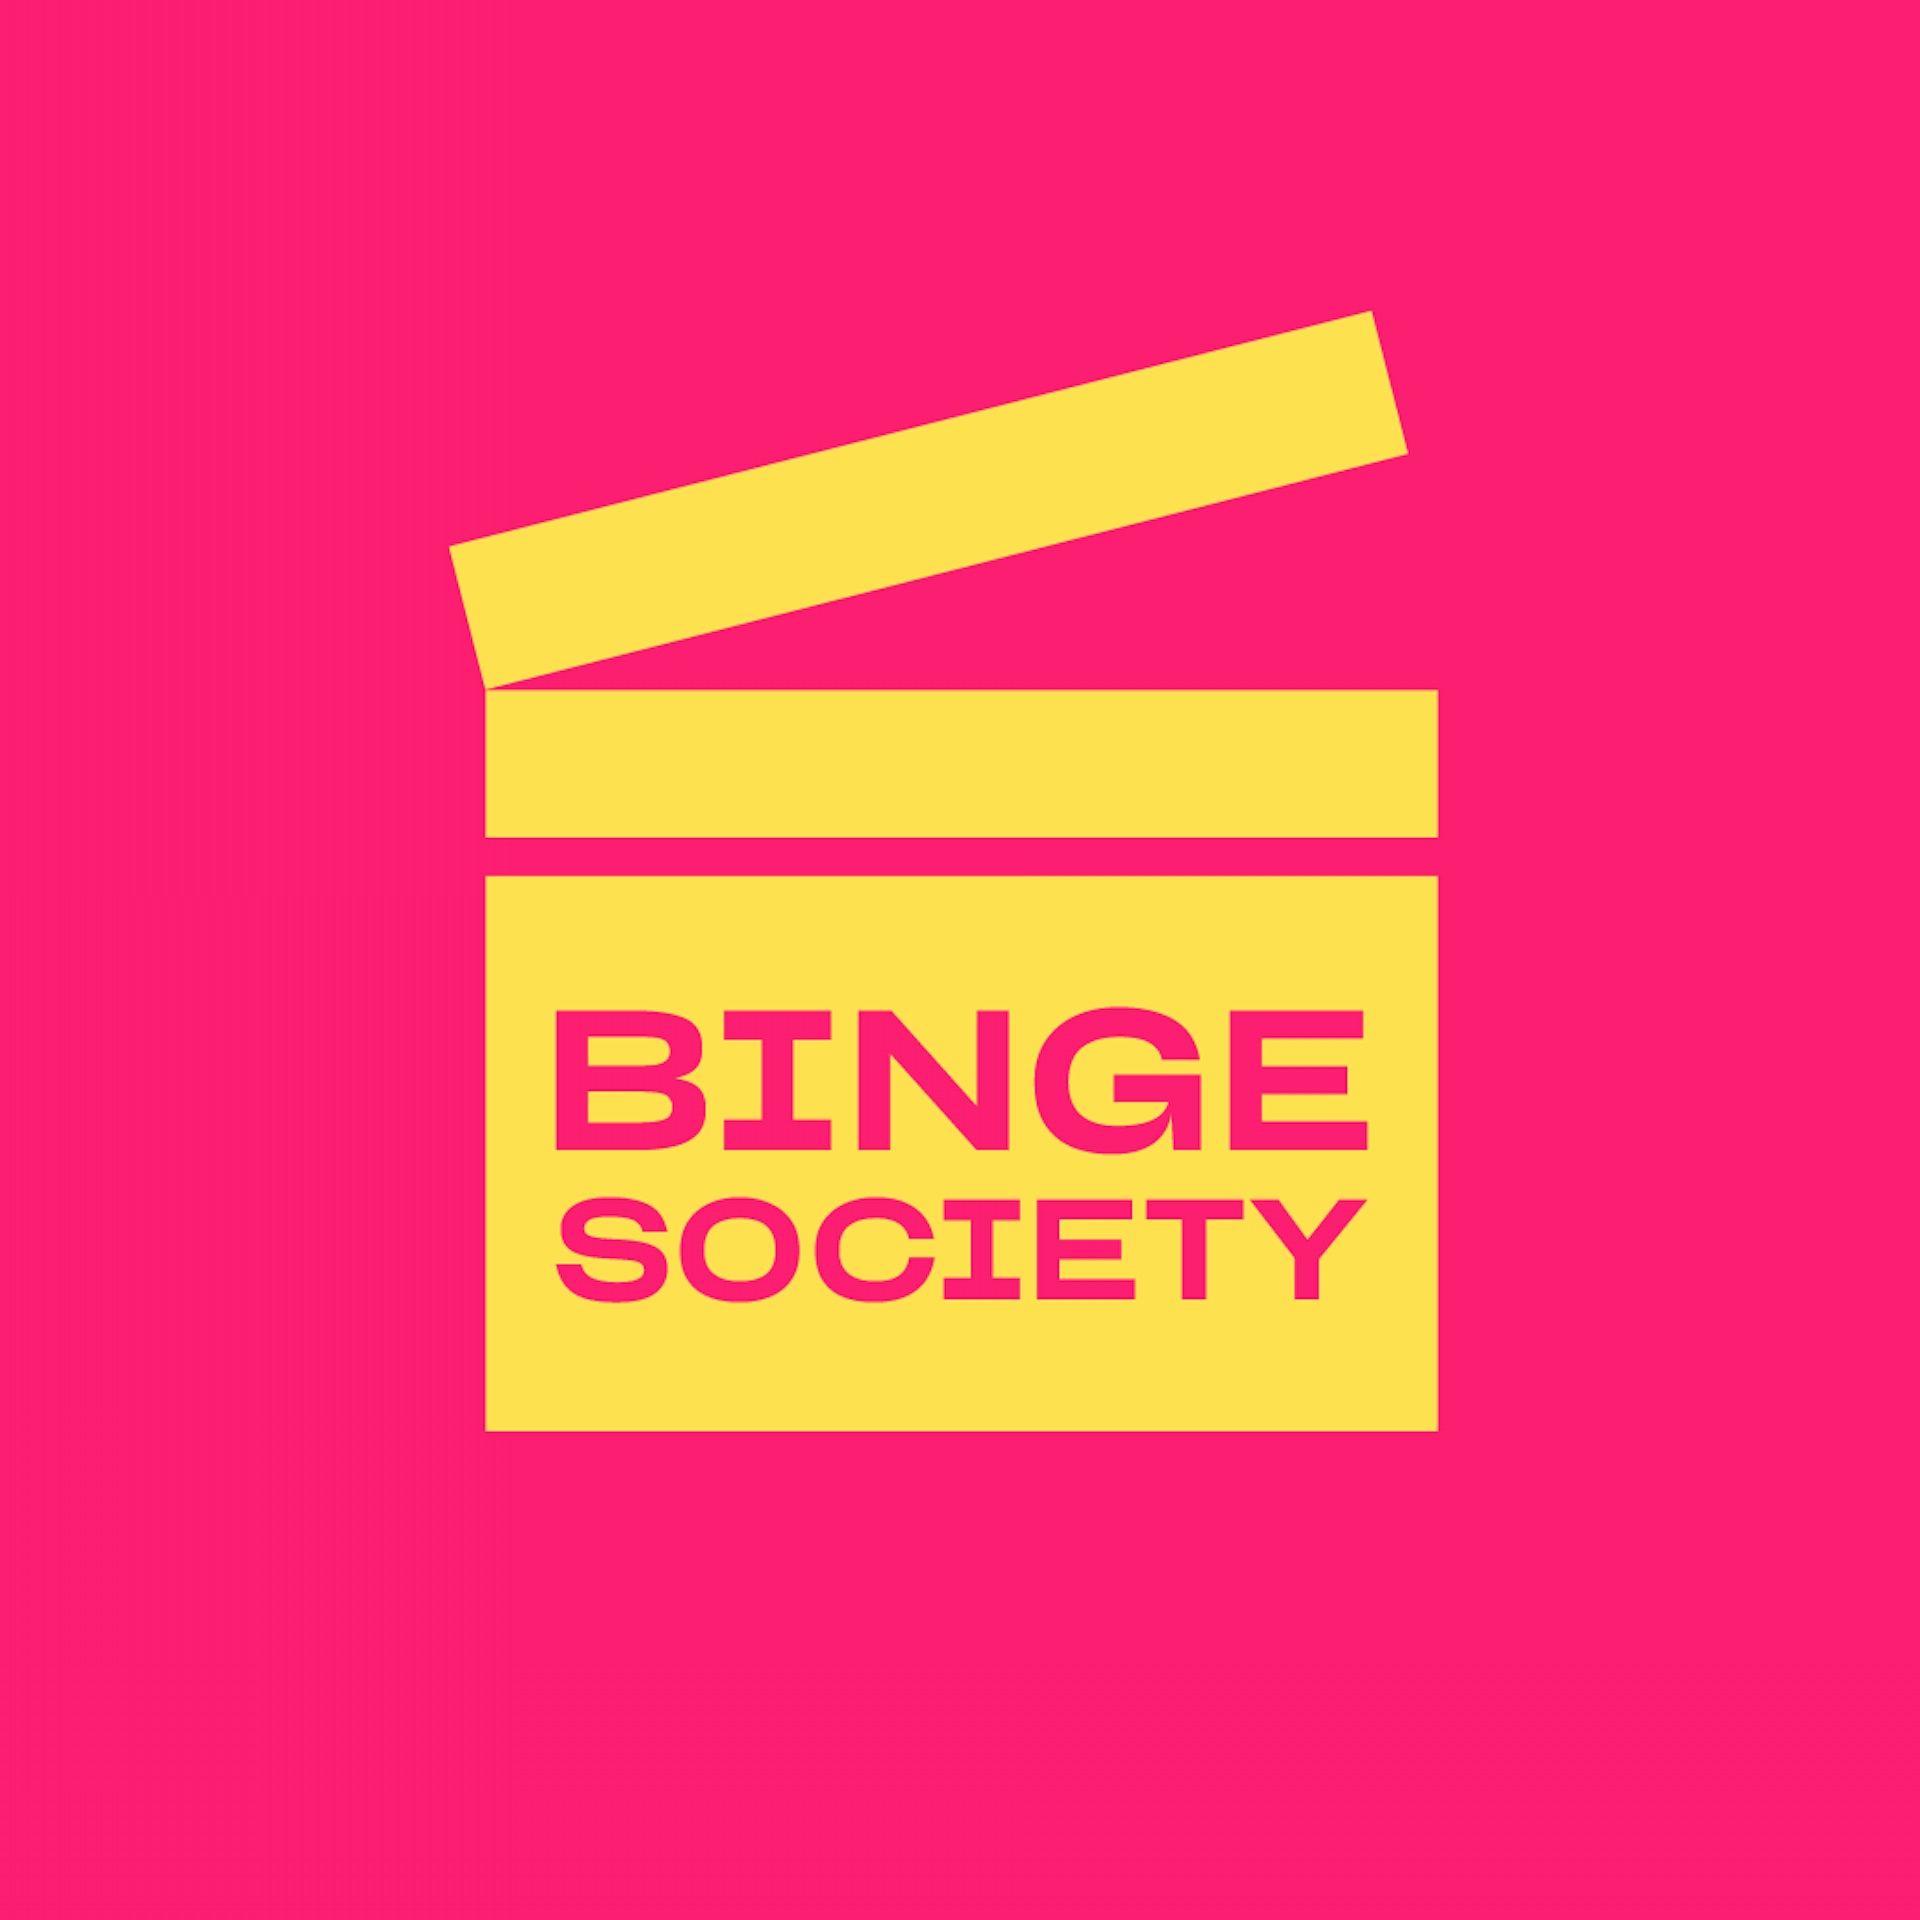 Vega Digital Awards Winner - Jellysmack's Binge Society Popcorn Perfect Movie Clips